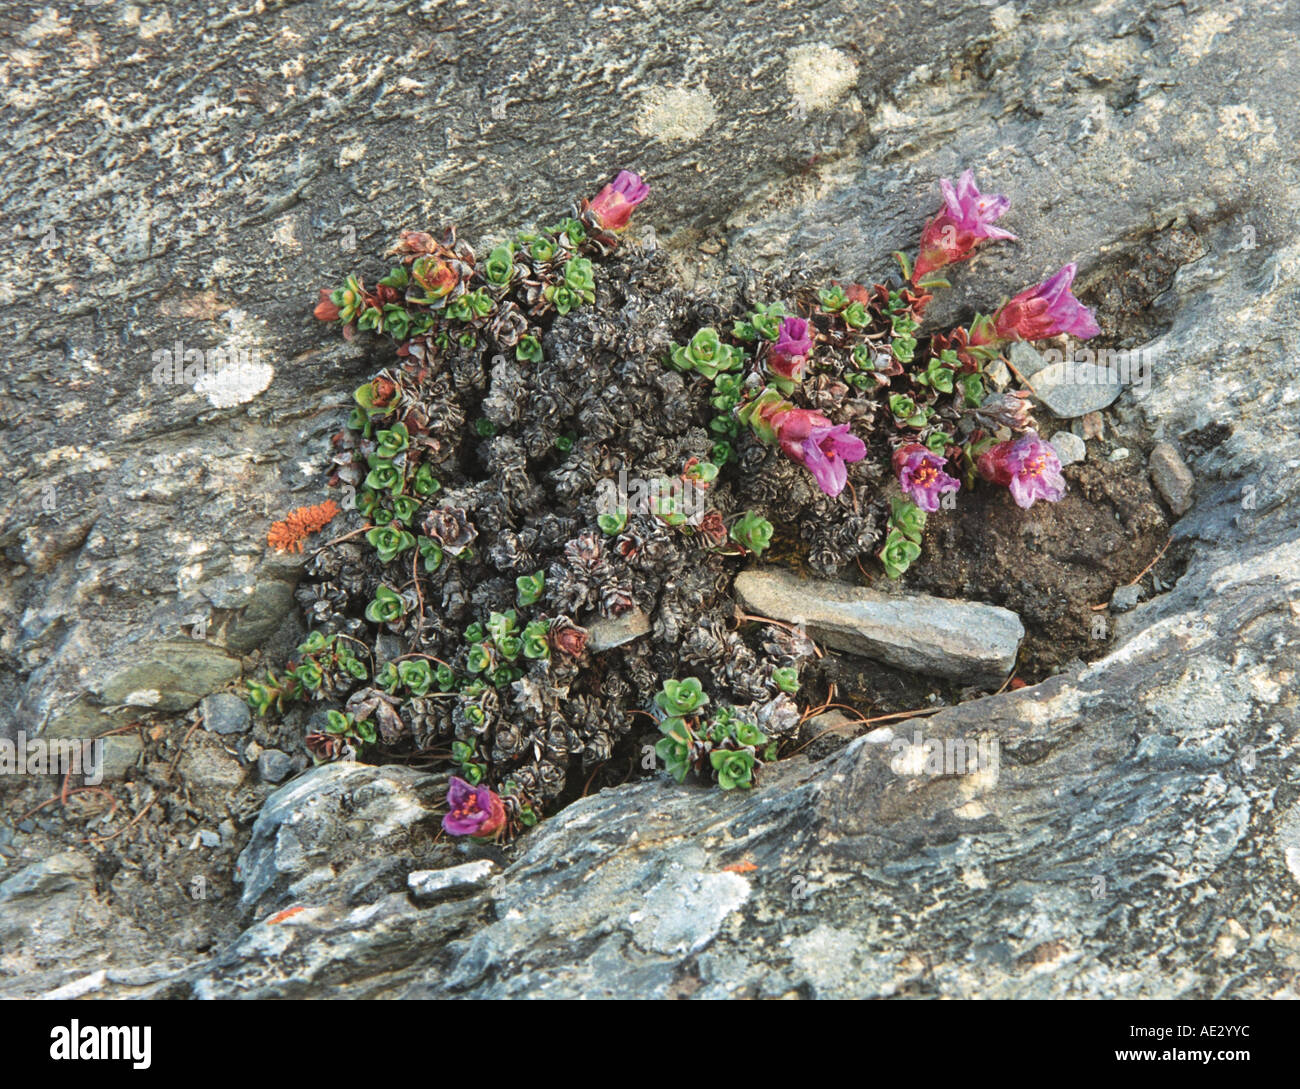 Wild alpine flowers Saxifrage (Saxifraga oppositifolia) growing in rocky soil. Altai. Siberia. Russia Stock Photo